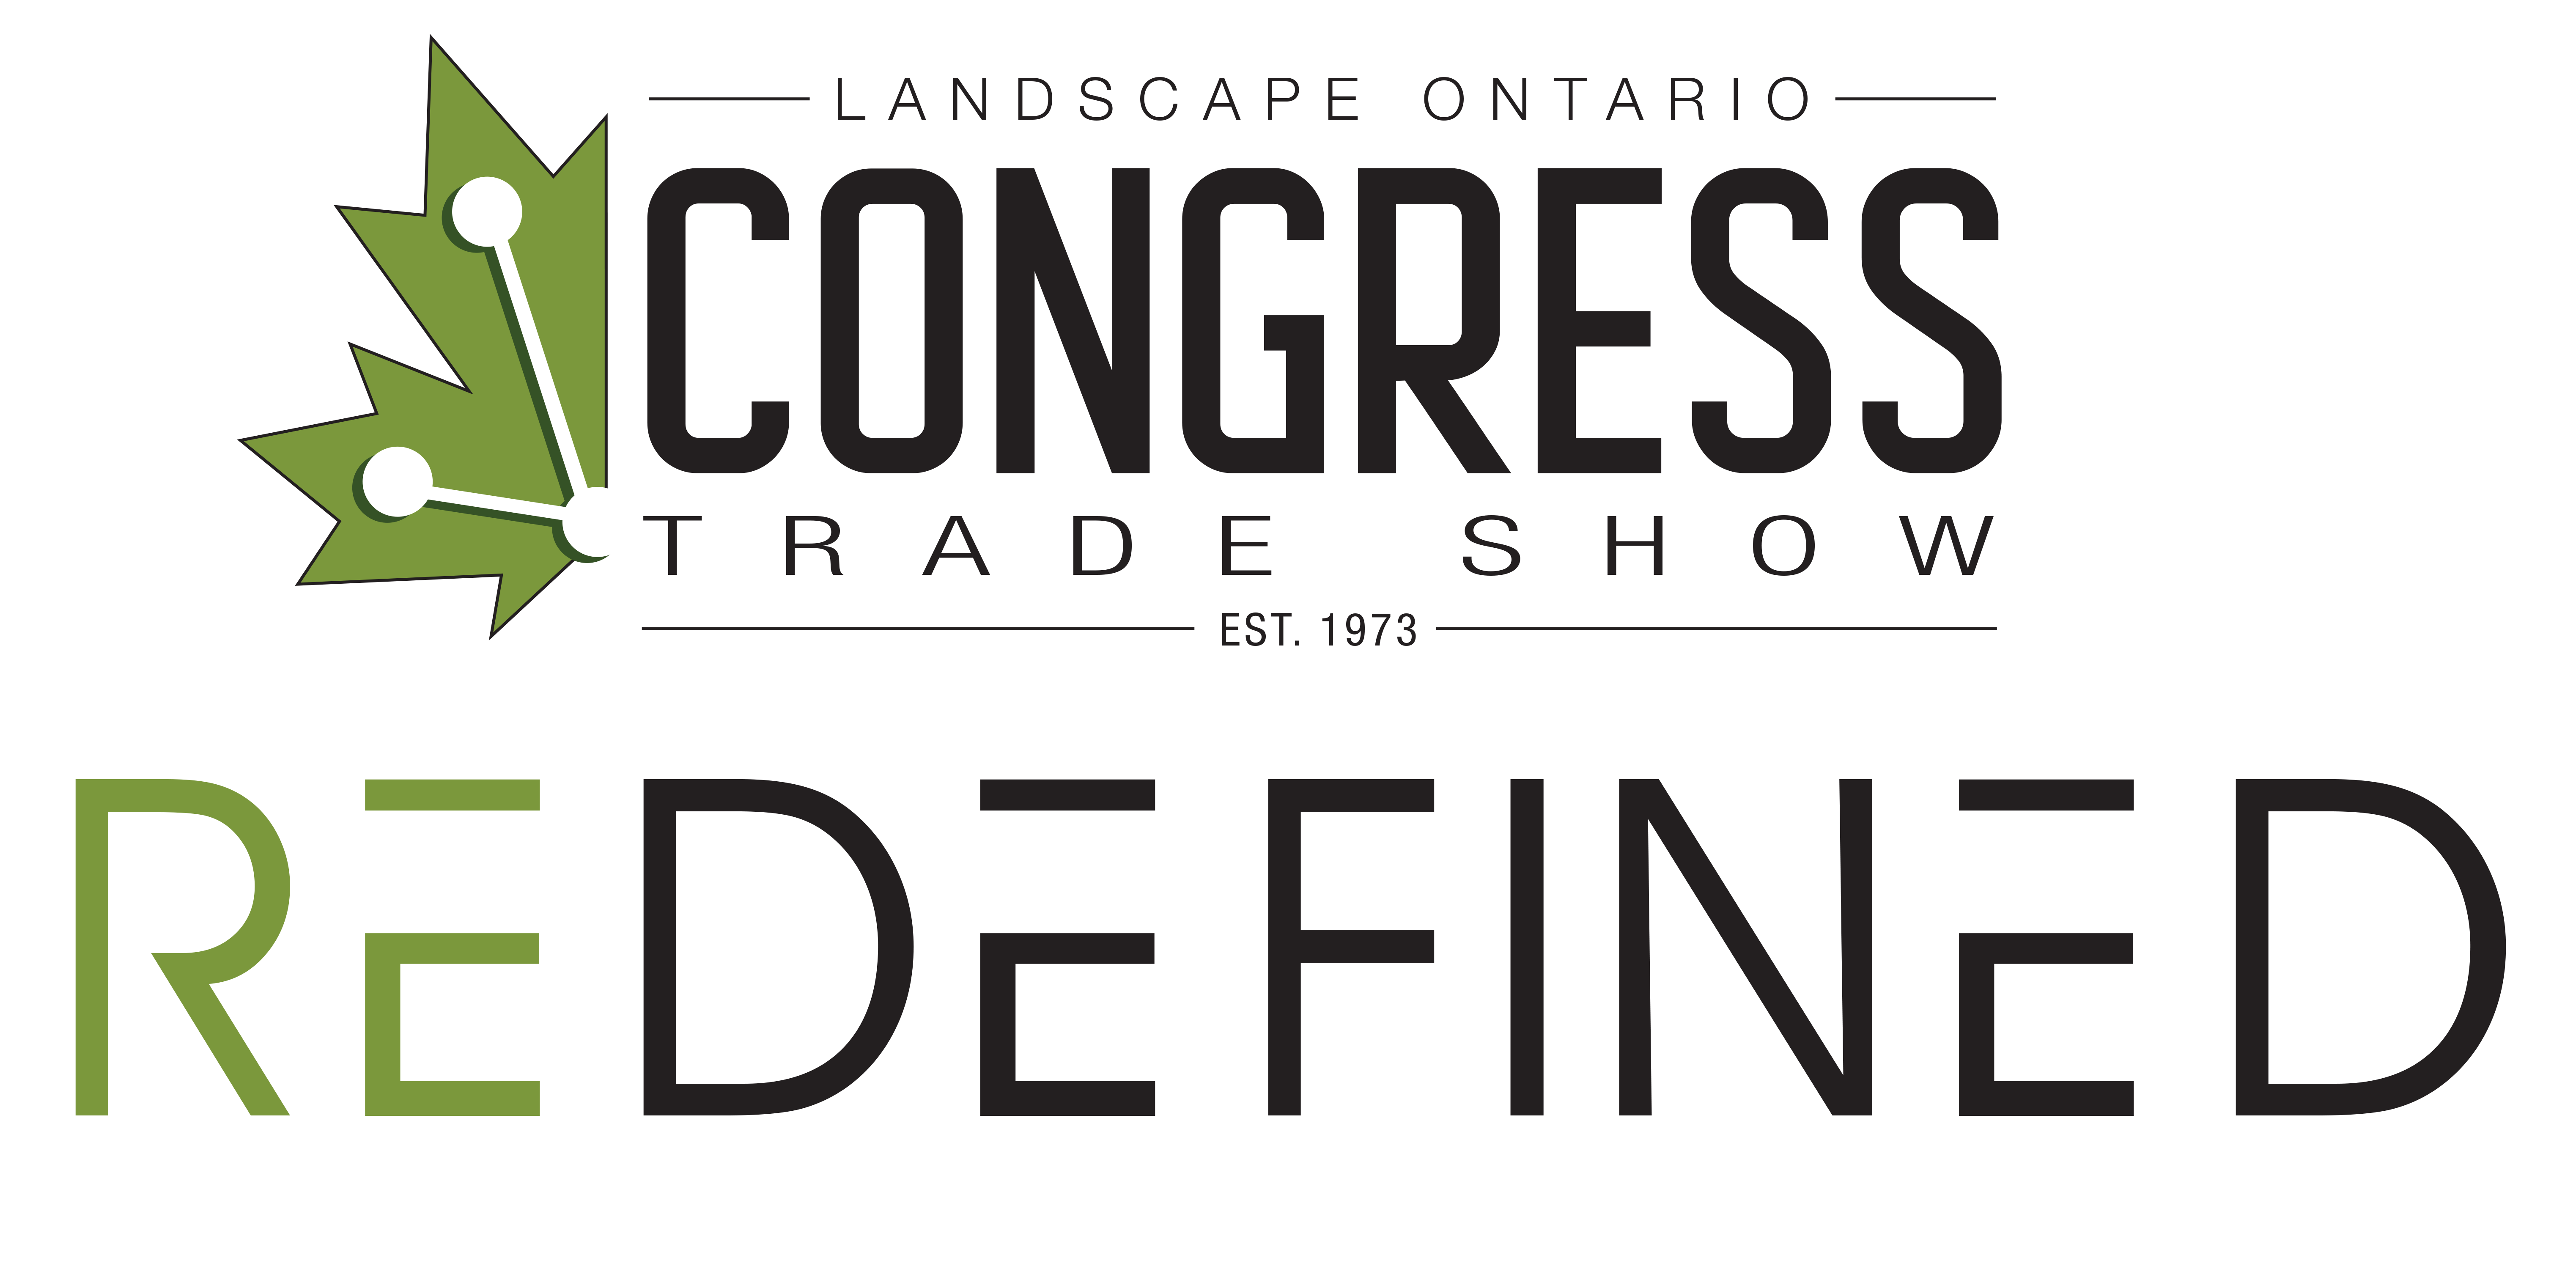 Trade Show Logo